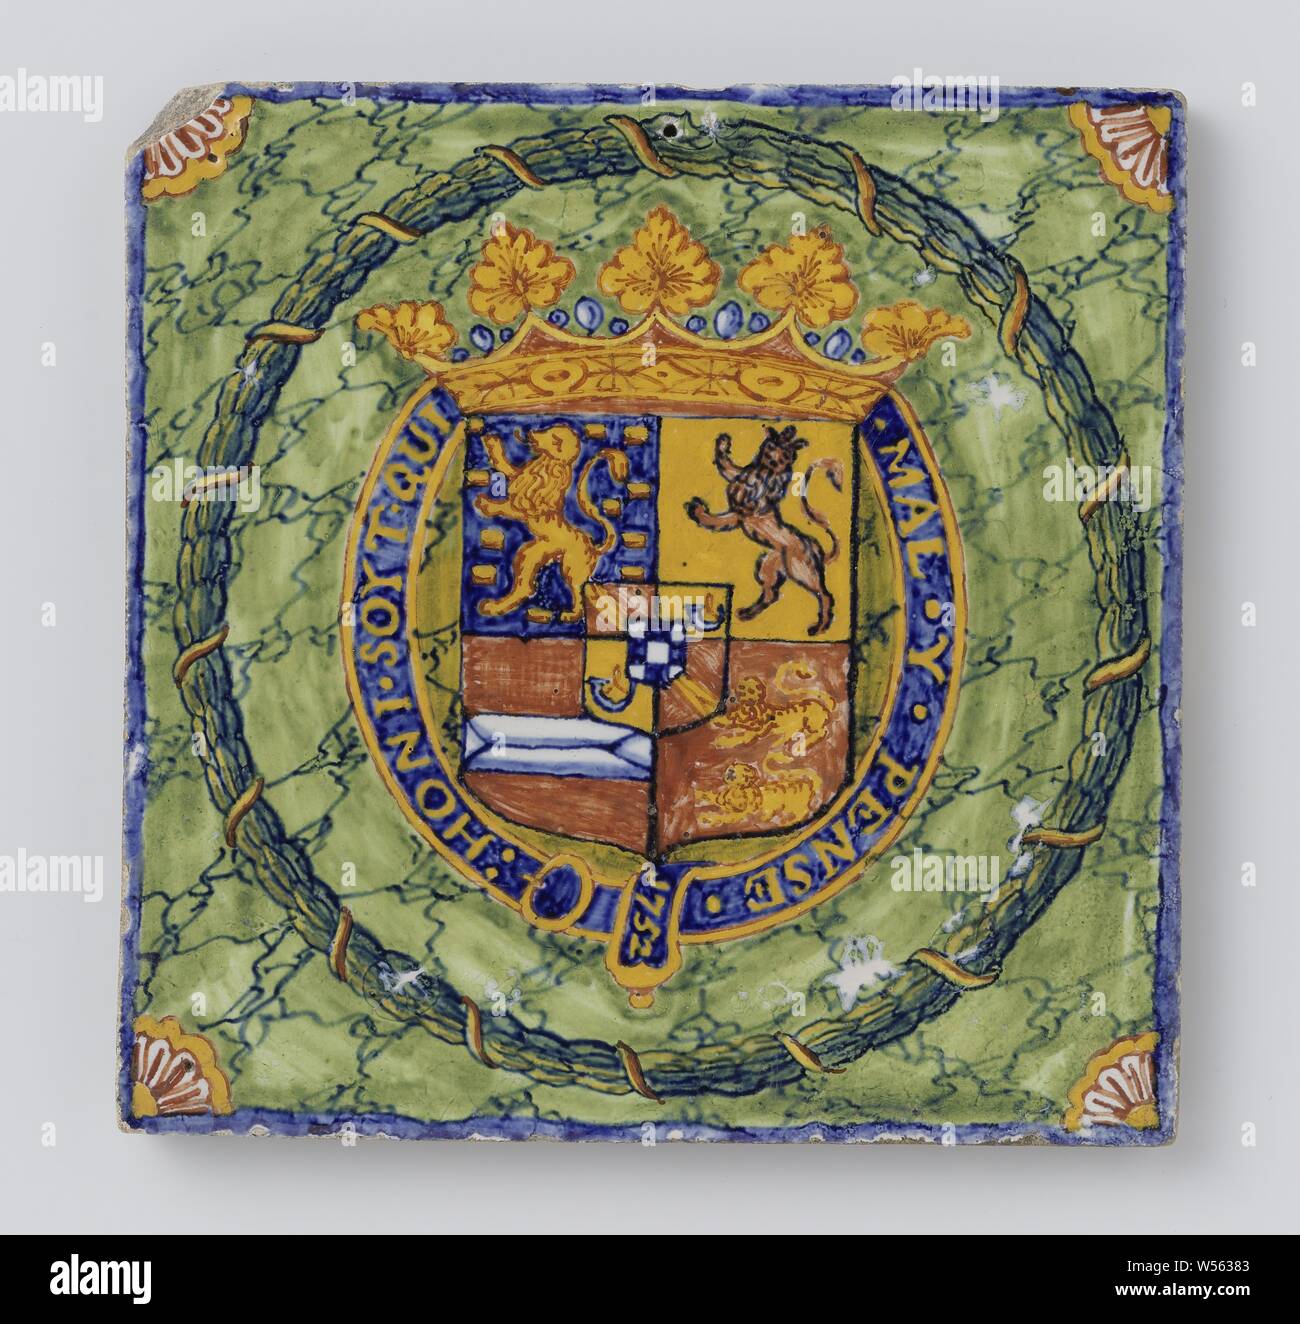 Piastrella dipinte con lo stemma del principe Guglielmo IV o